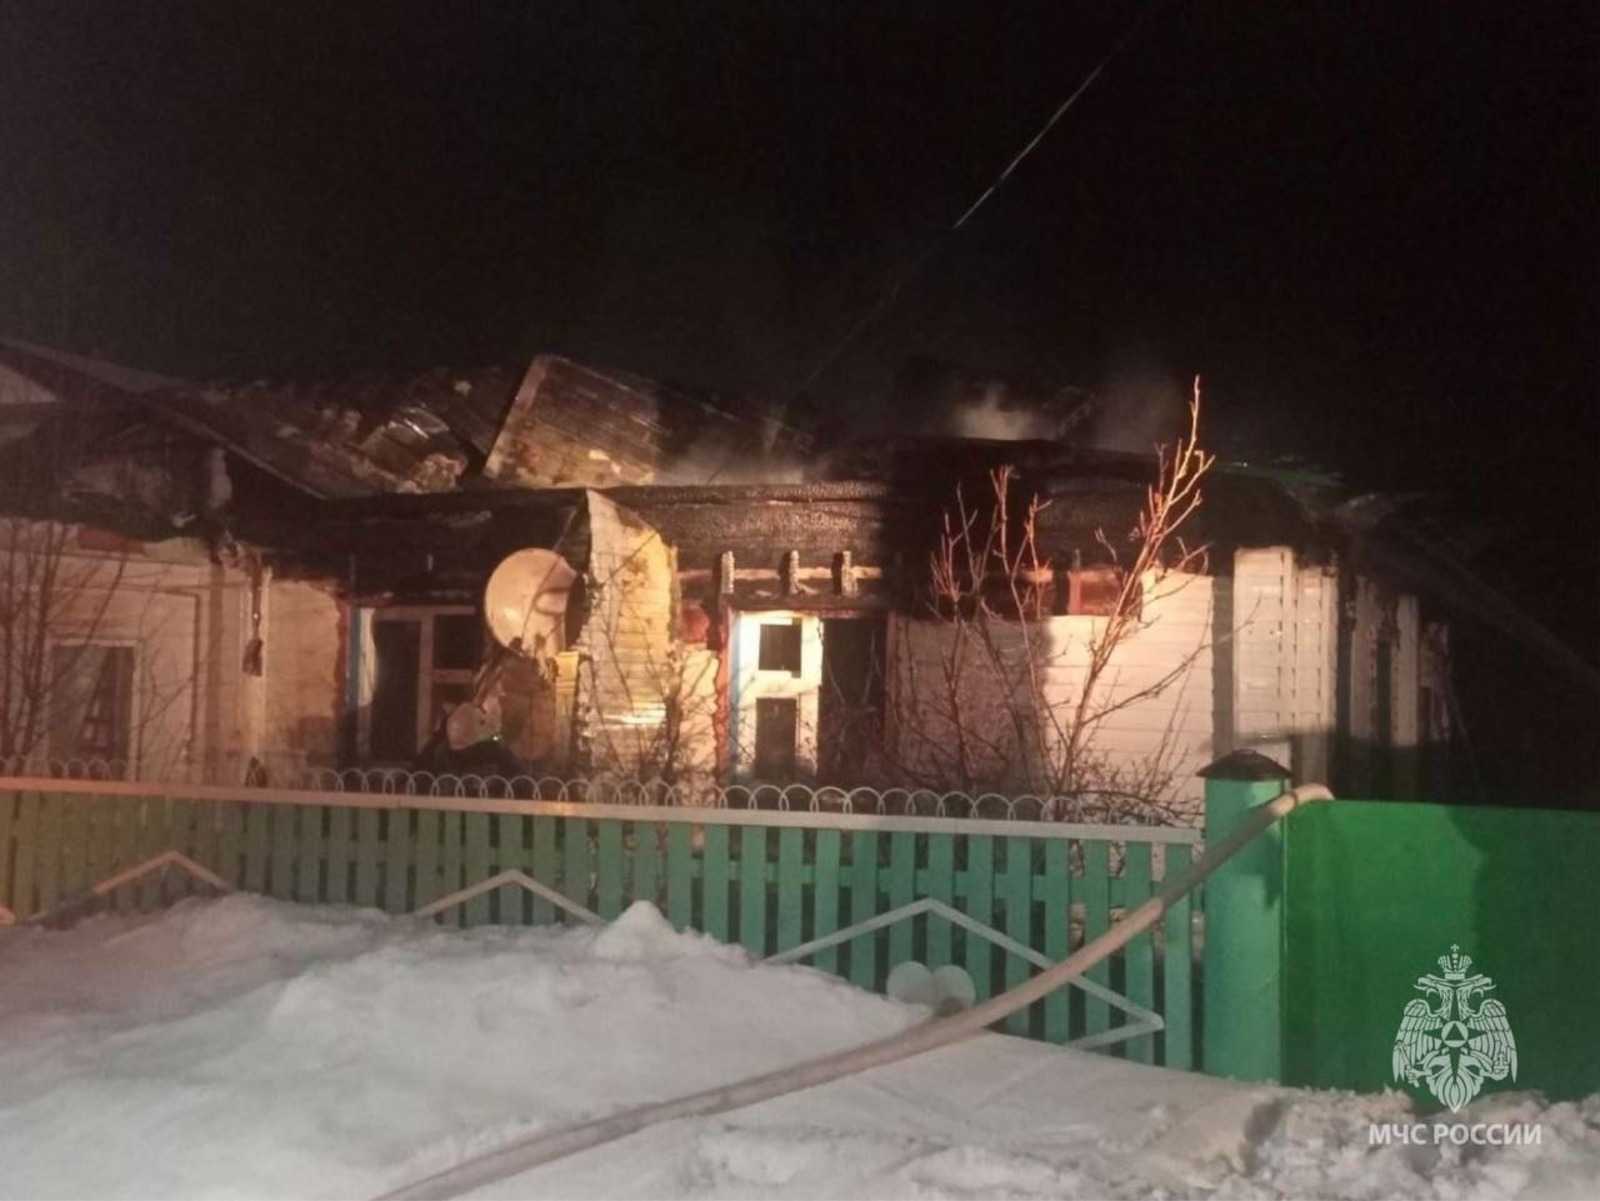 В сгоревшем деревянном доме в Башкирии пожарные нашли труп мужчины